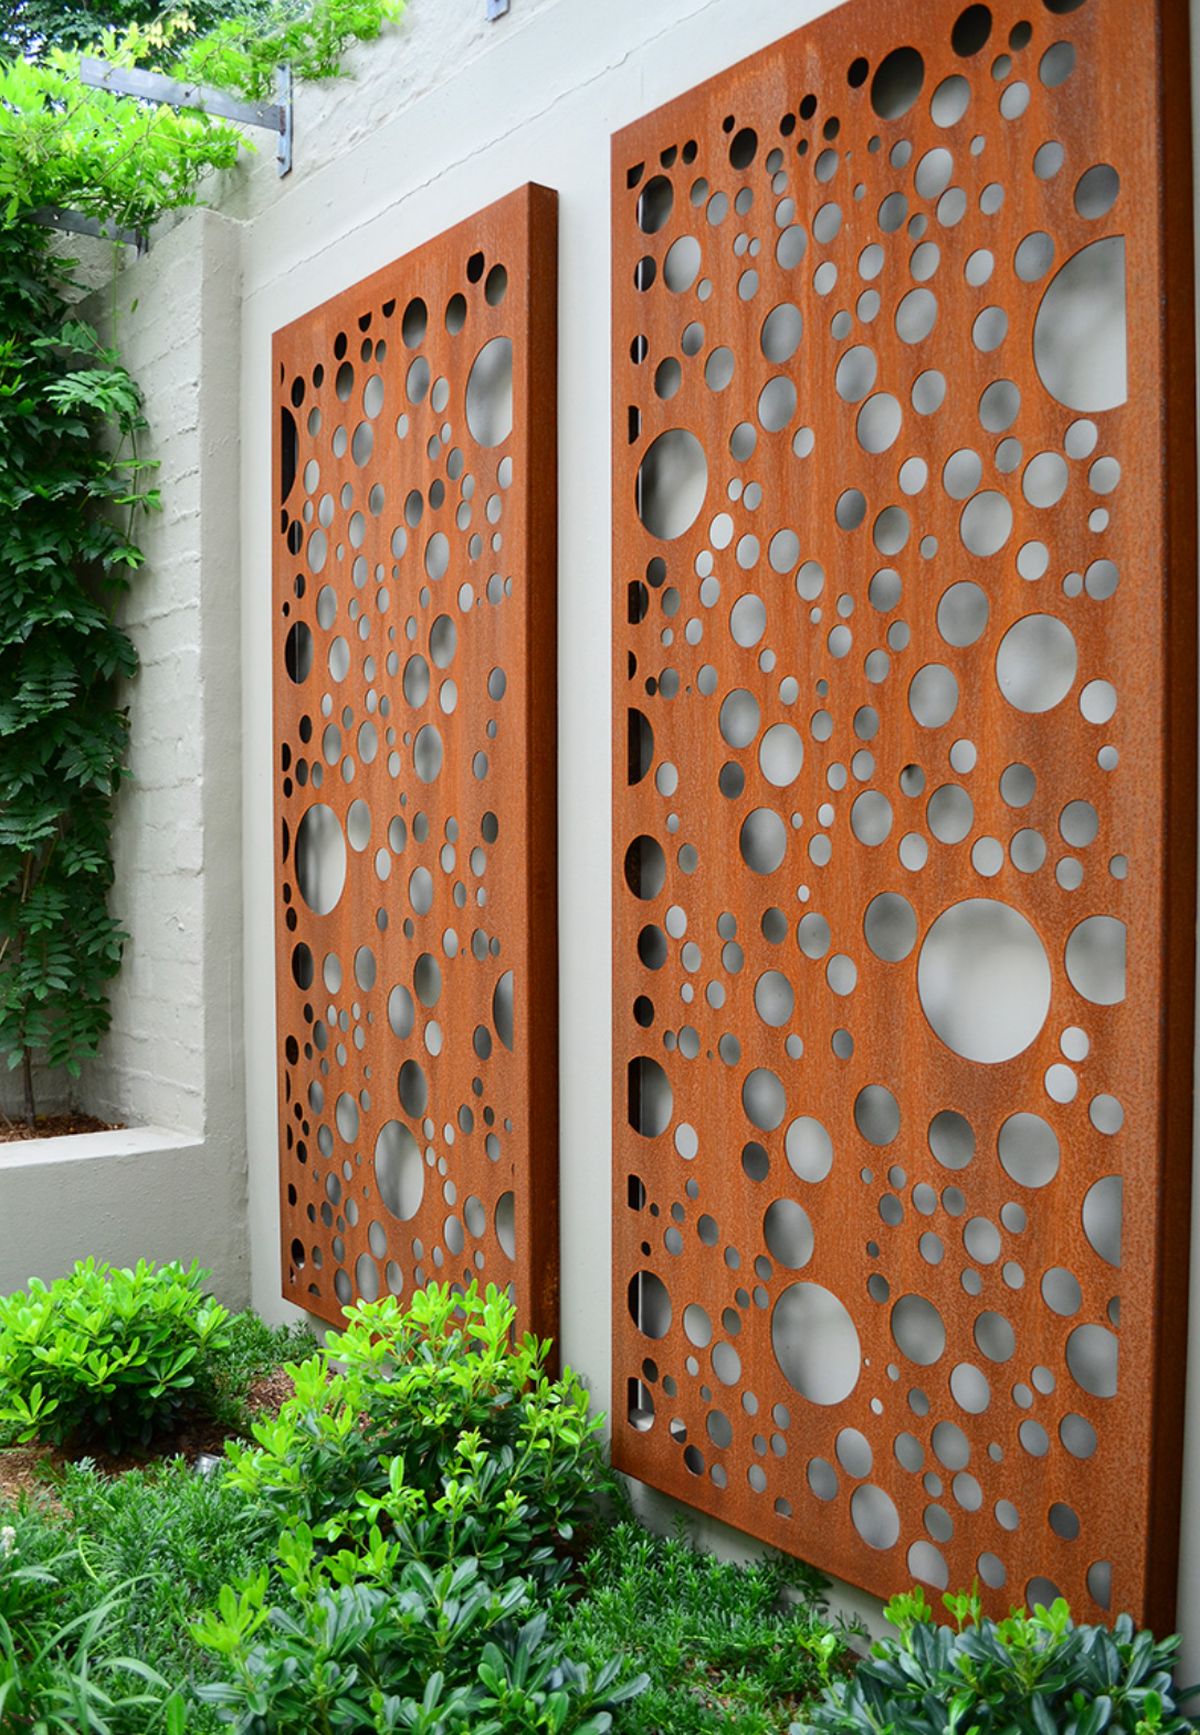 Paravane din Corten cu rol decorativ pentru a colora o grădină între ziduri. Foto via Out House Design